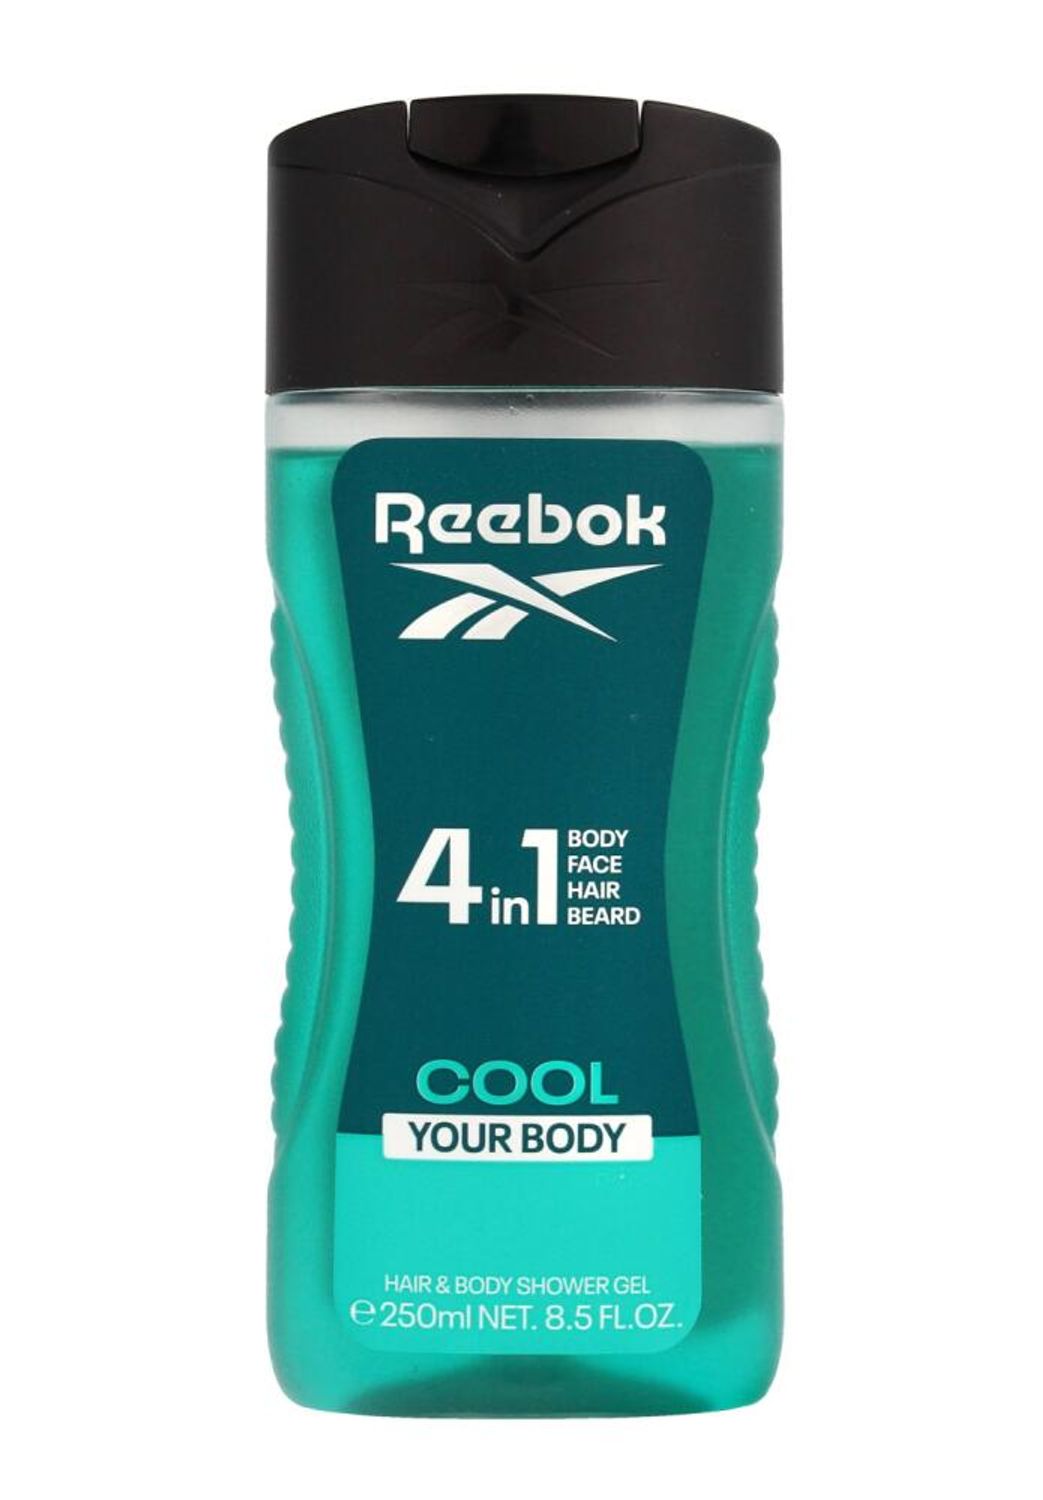 Reebok 4in1 Duschgel Cool Your Body 250ml Körperpflege Haare Gesicht Herren Mann